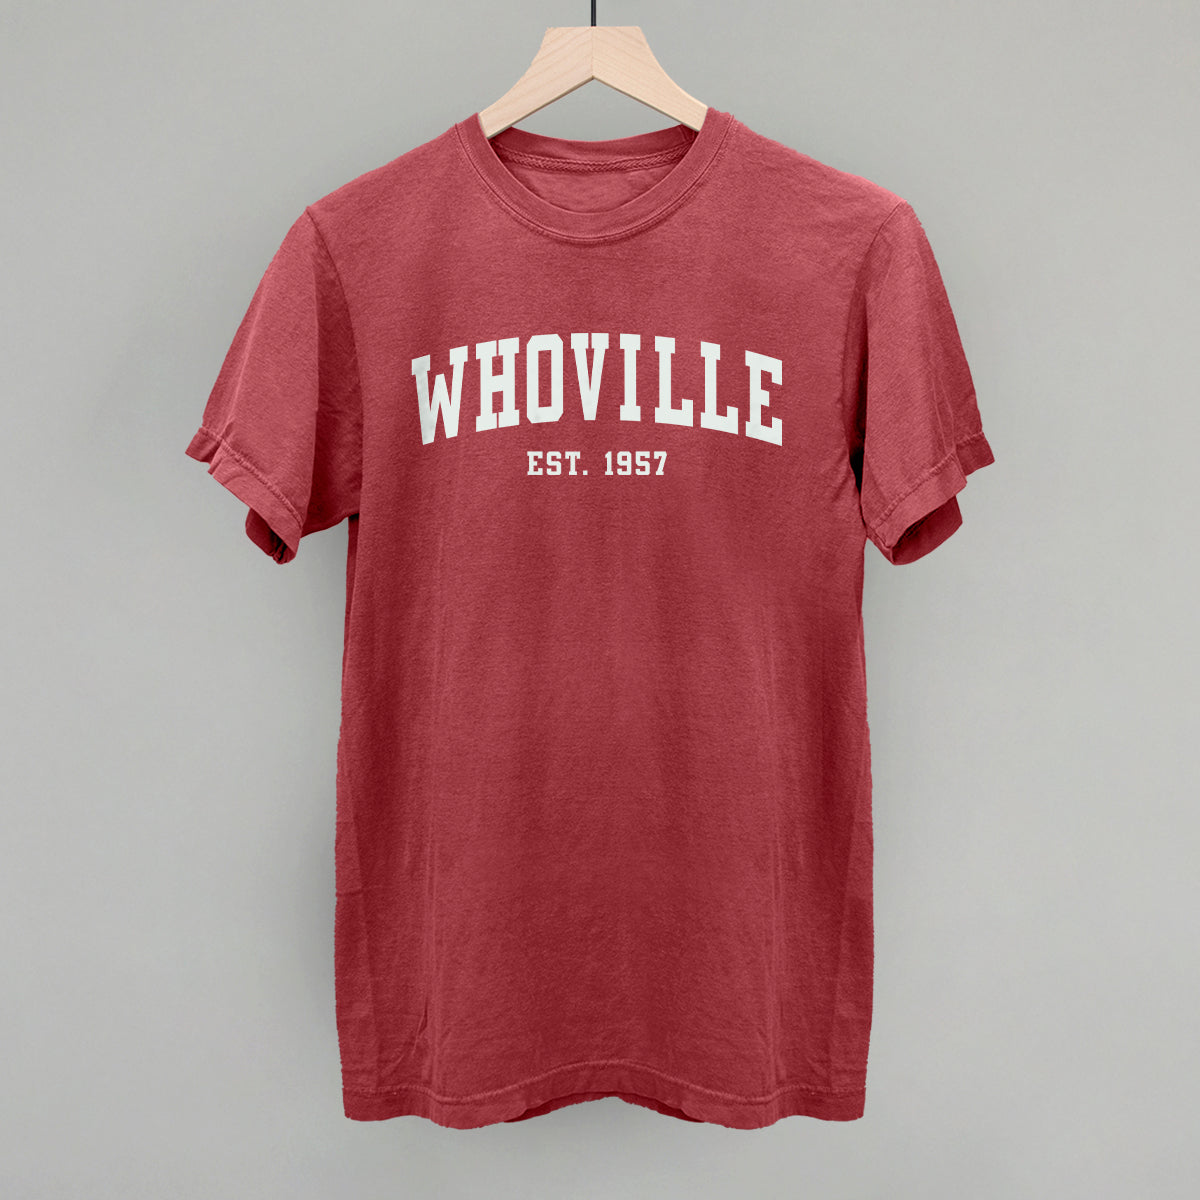 Whoville (Collegiate)